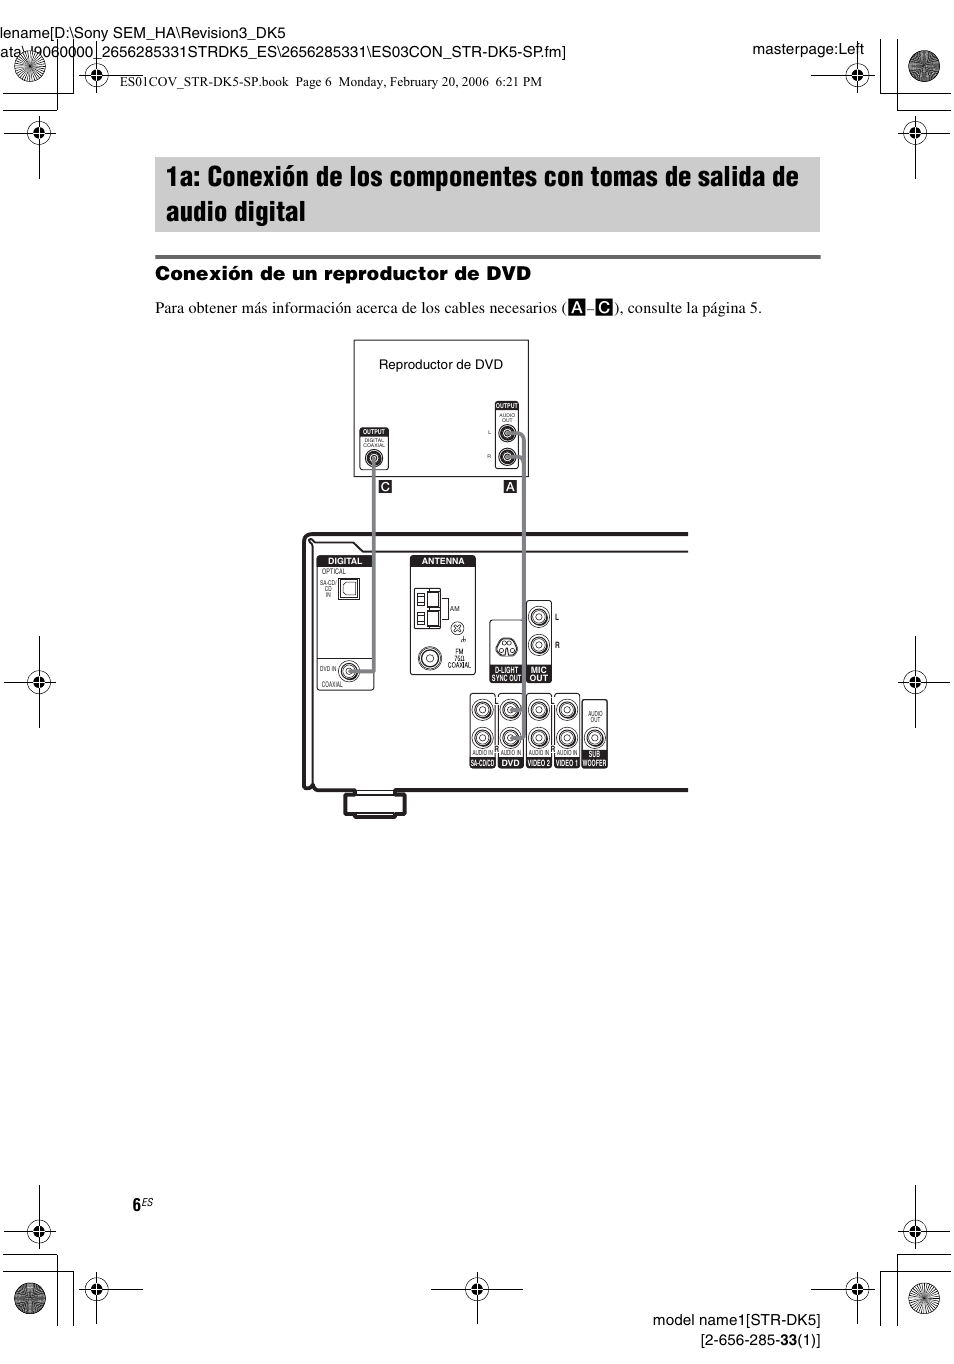 1a: conexión de los componentes, Con tomas de salida de audio digital, Conexión de un reproductor de dvd | C), consulte la página 5 | Sony STR-DK5 Manual del usuario | Página 6 / 48